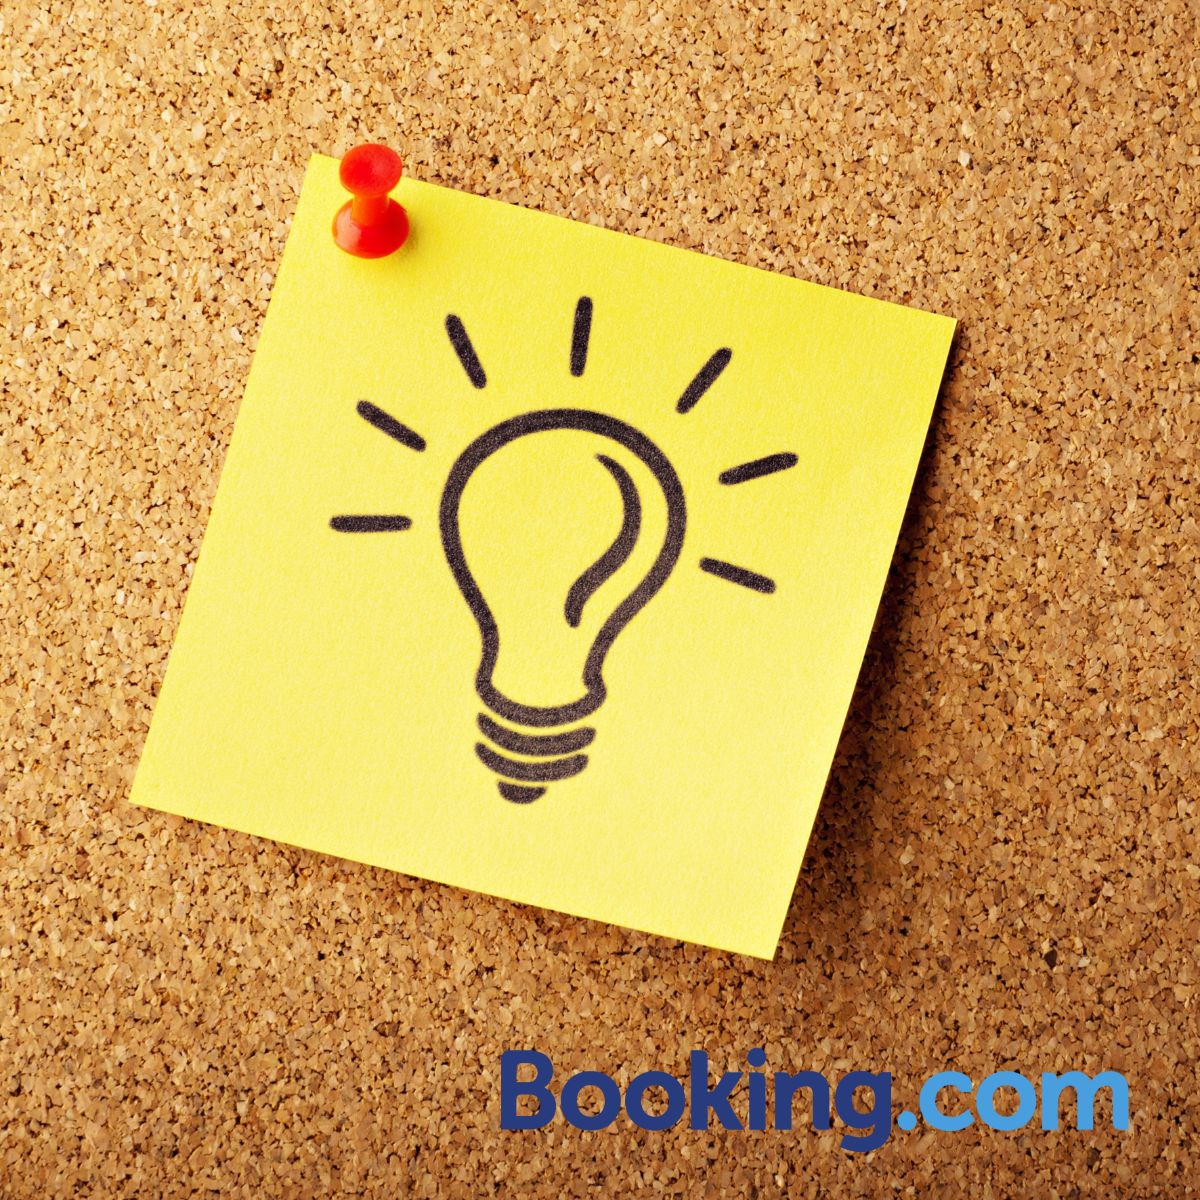 Výhody a nevýhody rezervácie cez Booking